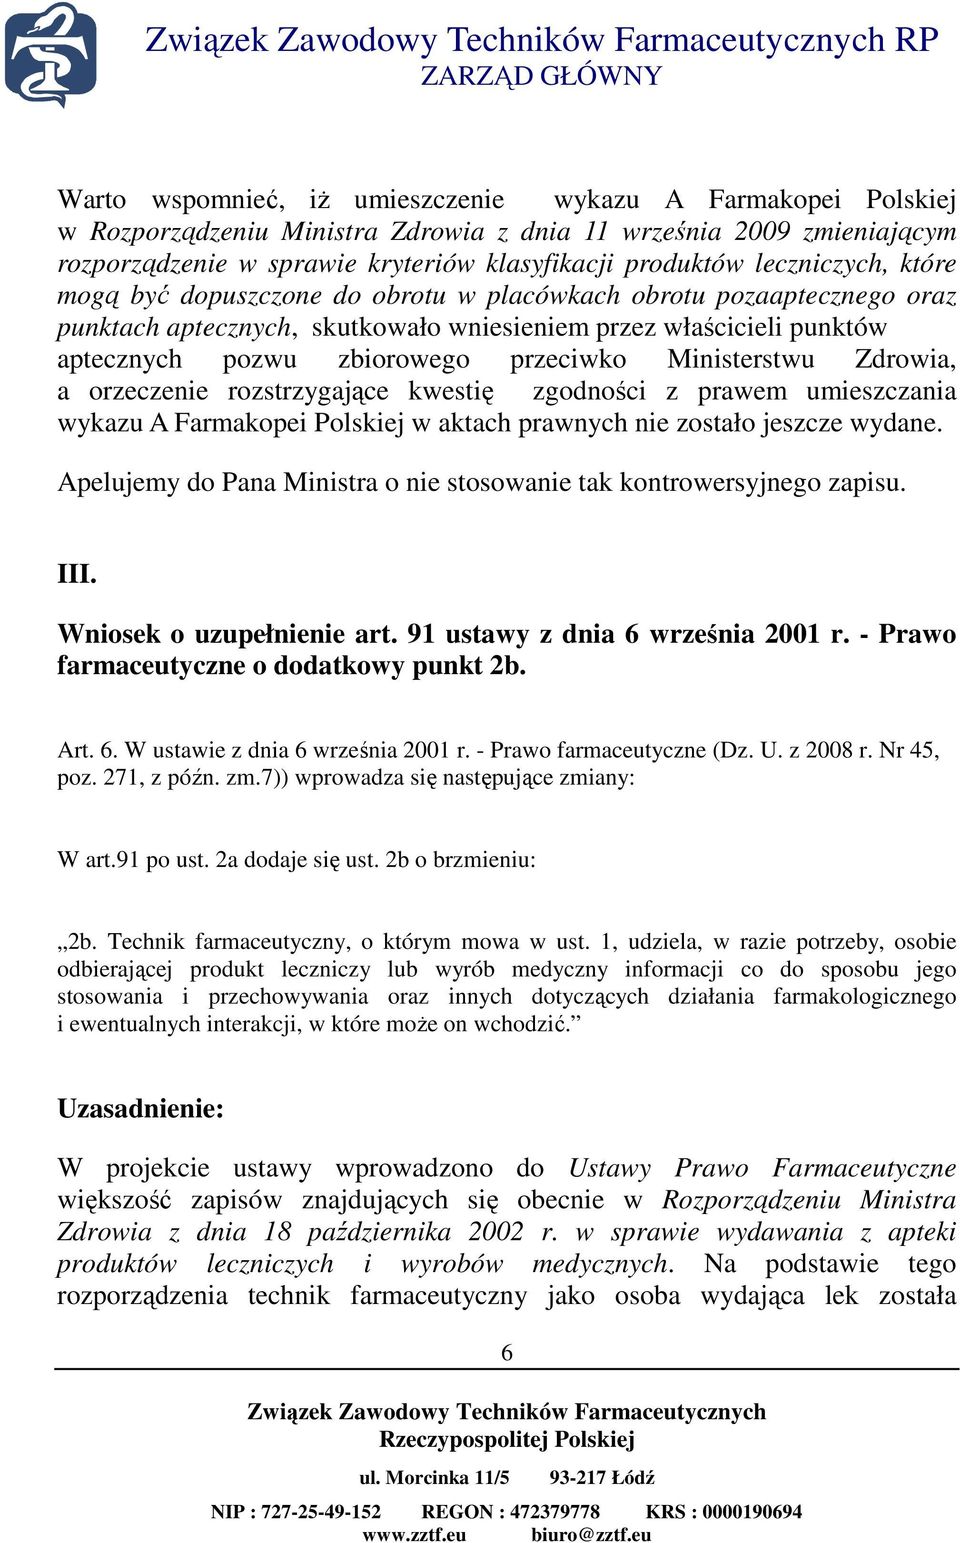 Ministerstwu Zdrowia, a orzeczenie rozstrzygające kwestię zgodności z prawem umieszczania wykazu A Farmakopei Polskiej w aktach prawnych nie zostało jeszcze wydane.